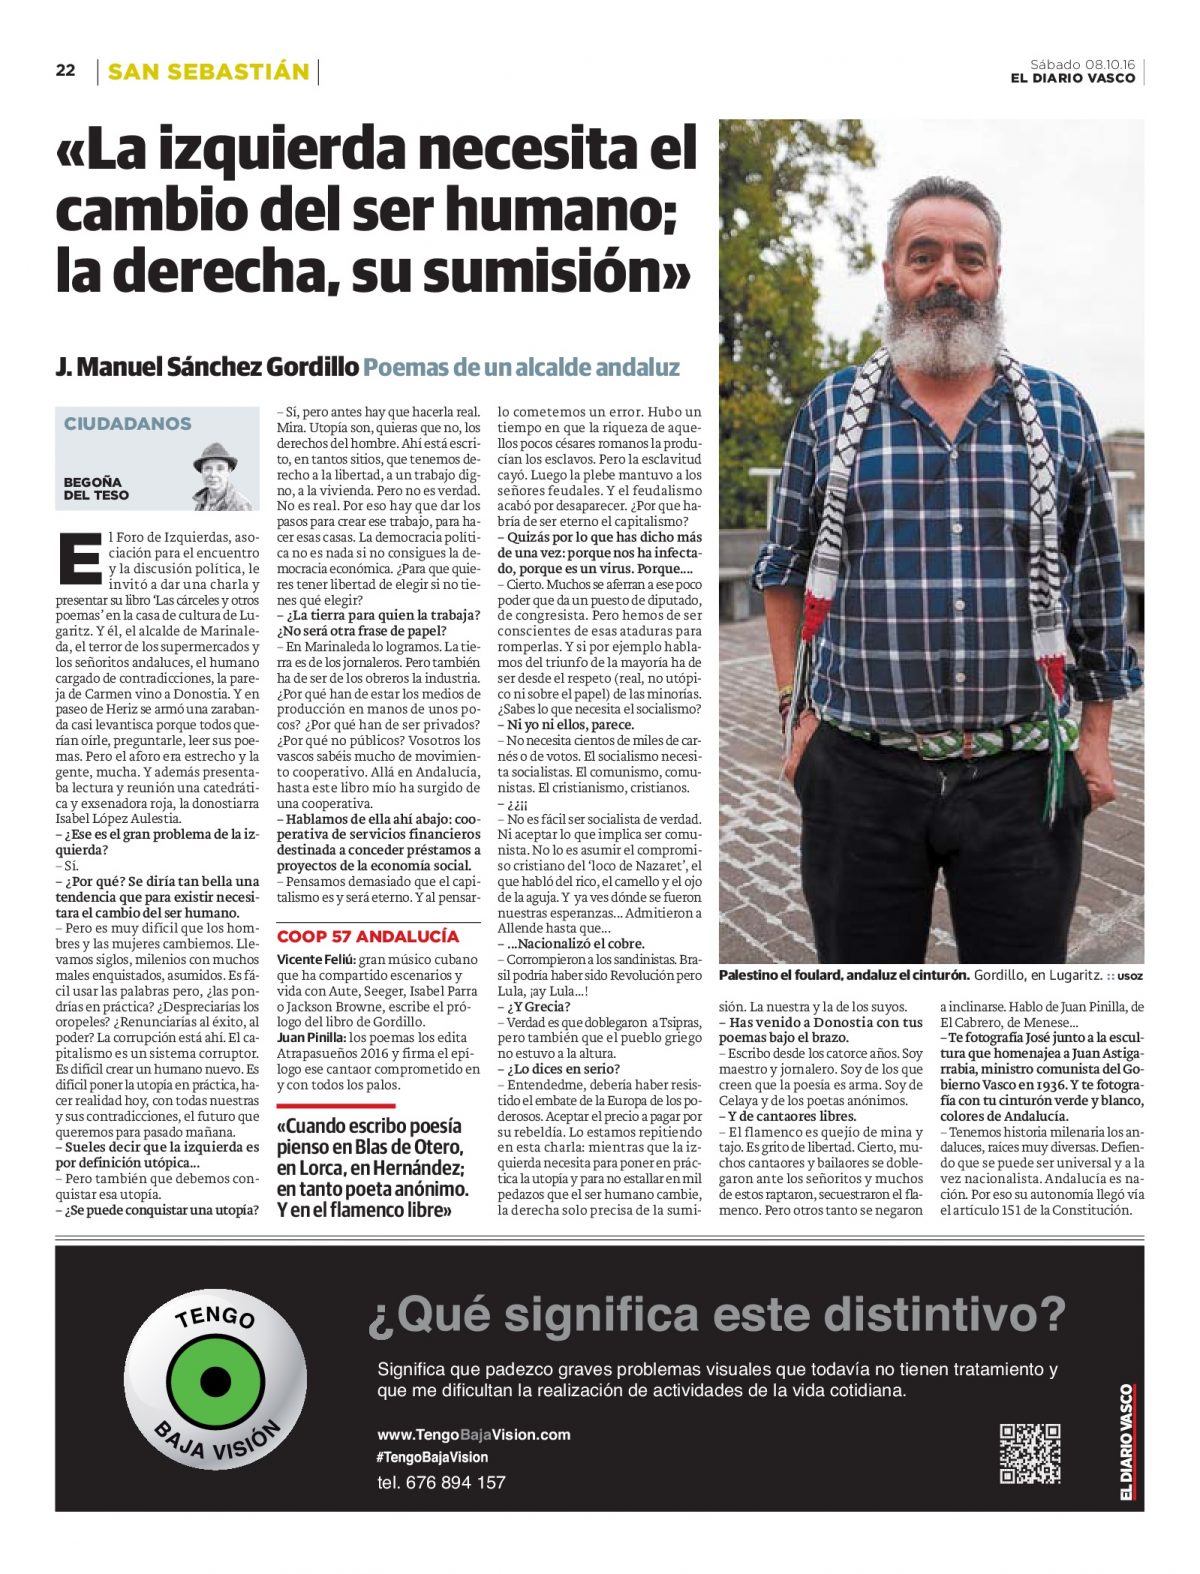 Anuncio de “Tengo Baja Visión” en Diario Vasco